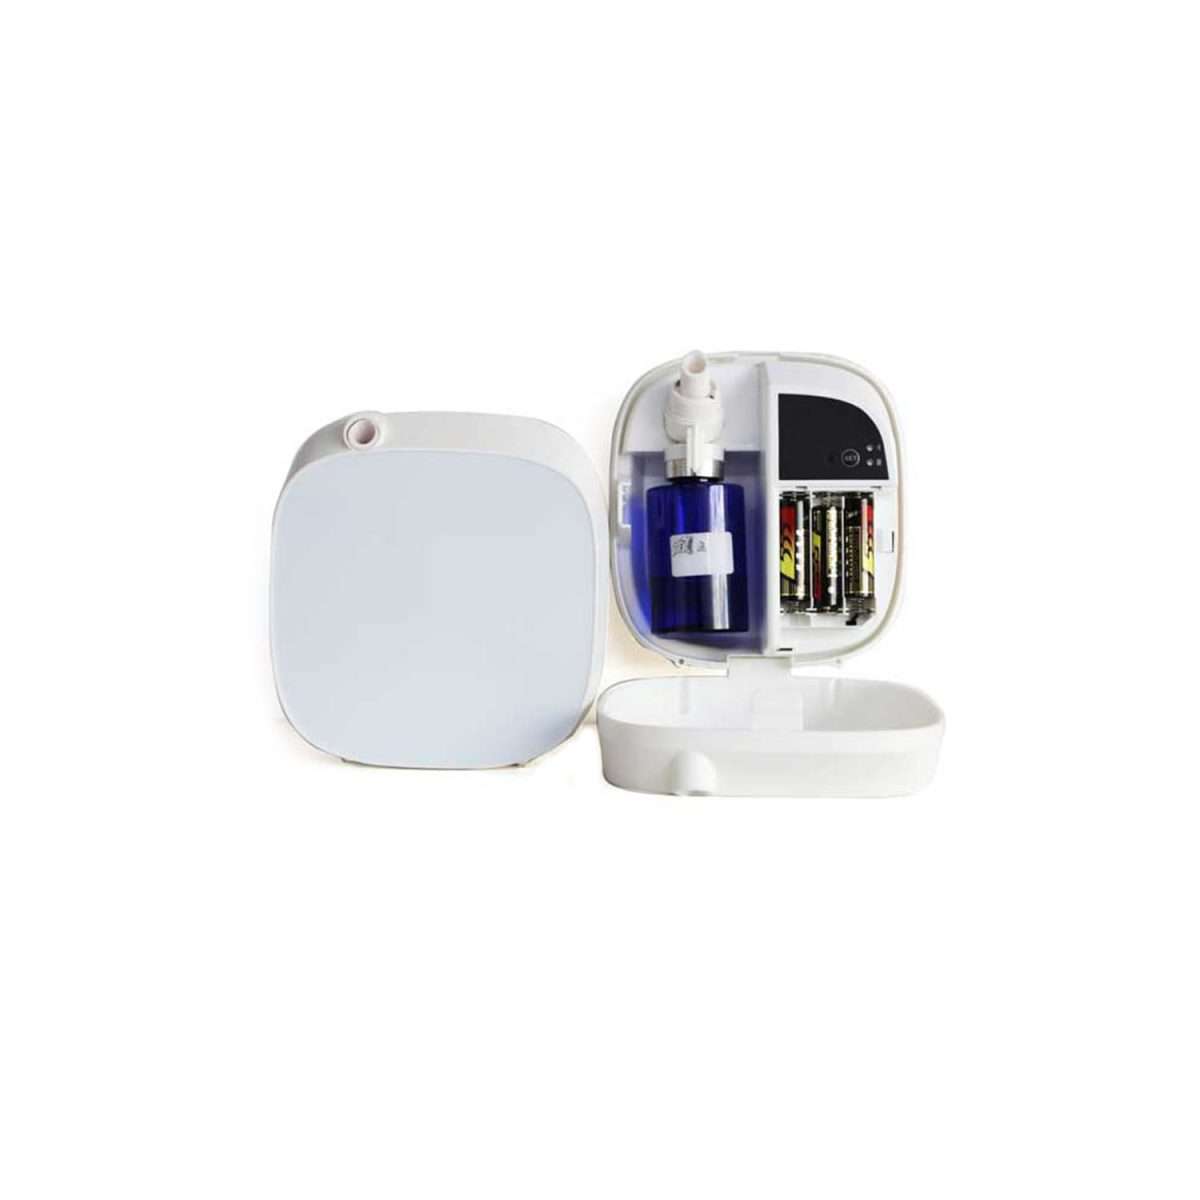 DIFFUSORE PROFUMI Bluetooth S150, Profumatore ambienti, diffusore fragranze, marketing olfattivo